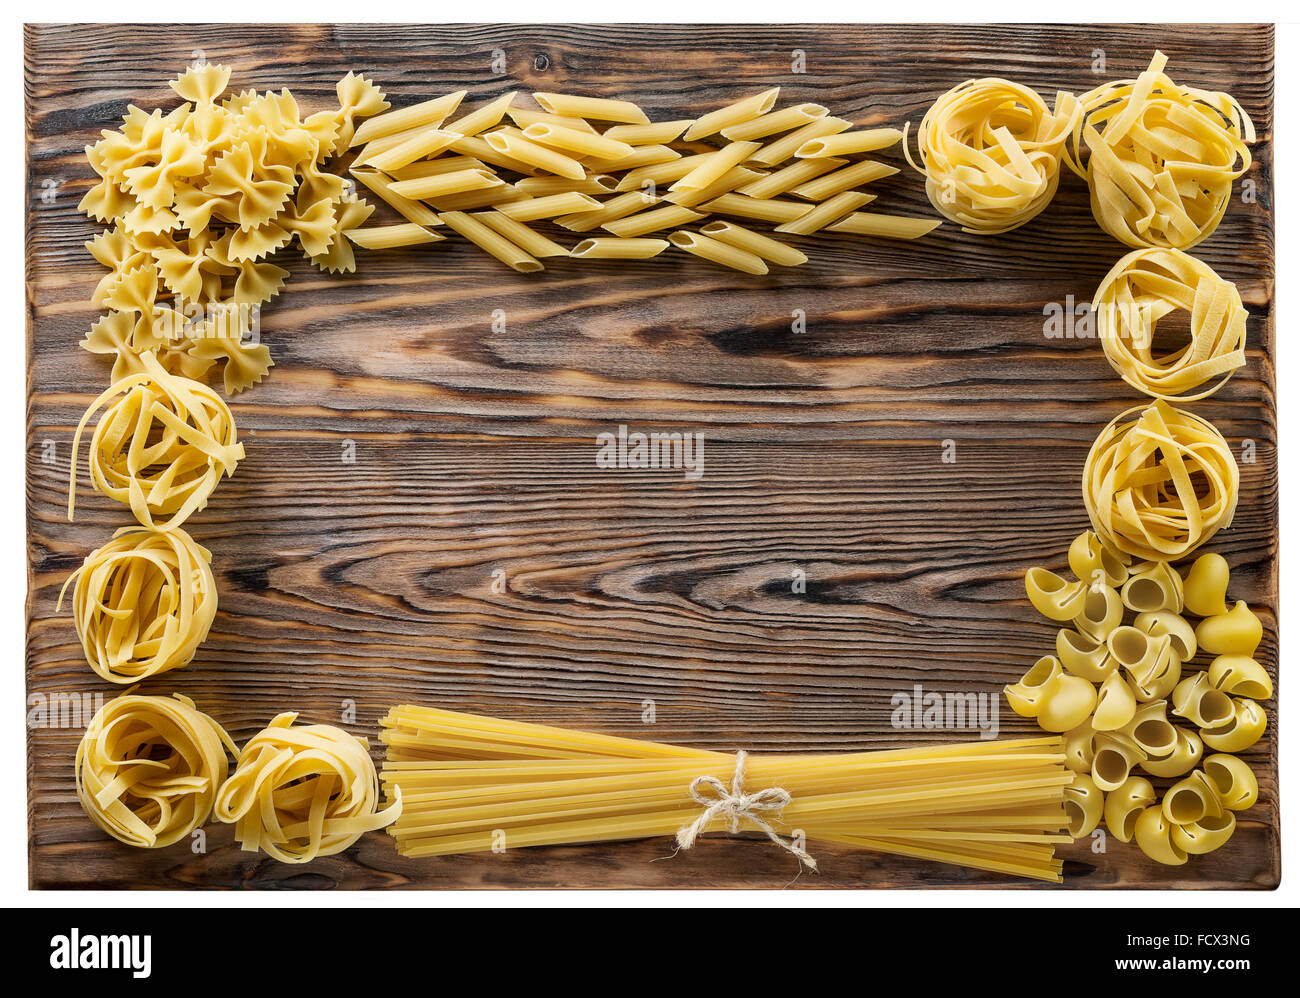 Variété de types et formes de pâtes Italiennes sur fond de bois. Banque D'Images